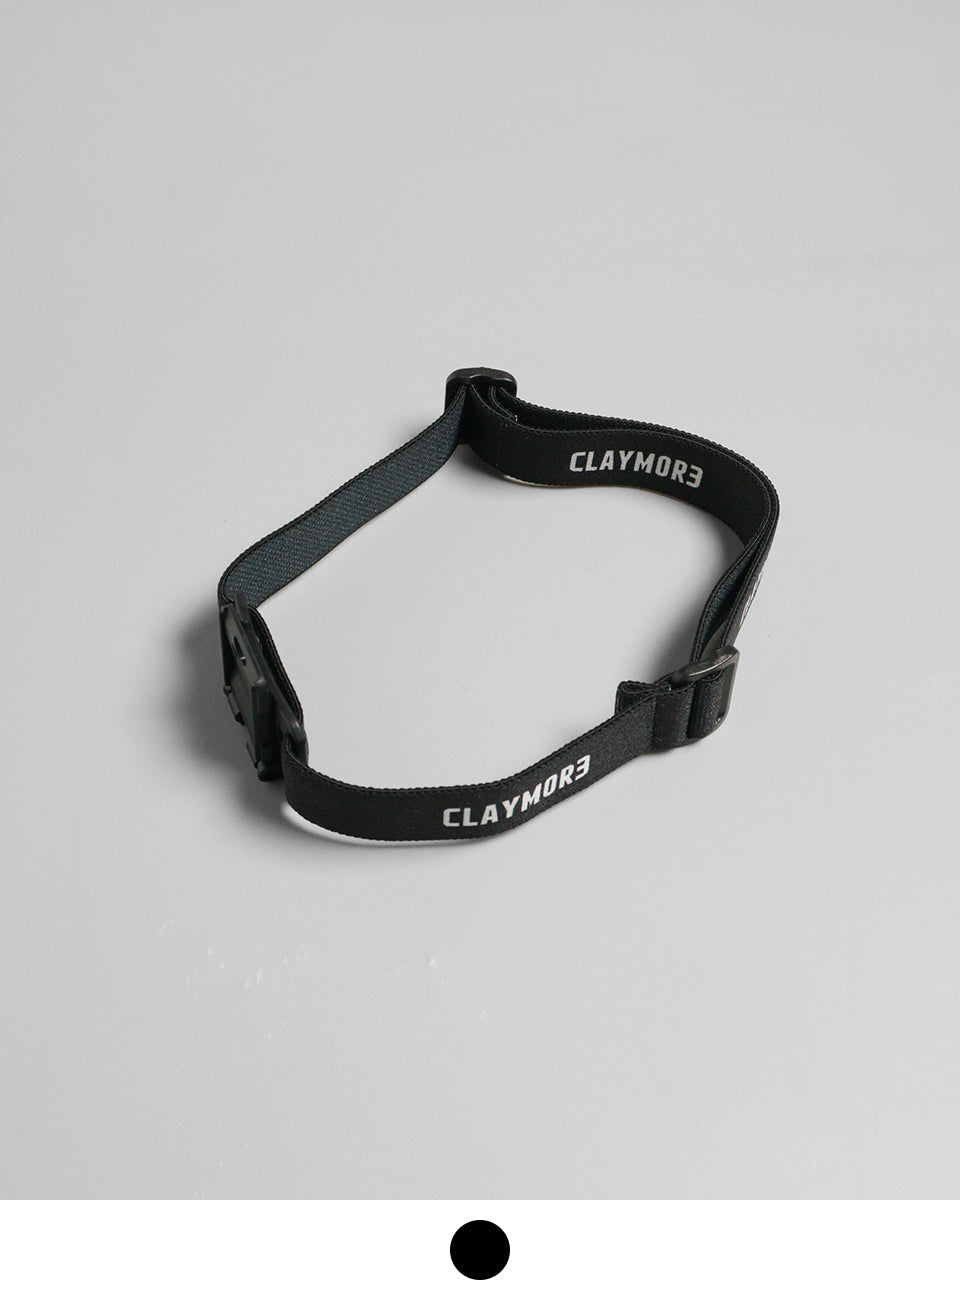 CLAYMORE クレイモア クレイモア キャップオン ウェアラブル キット CLAYMORE Cap On Wearable Kit ヘッドバンド アウトドア キャンプ CLA-WK01